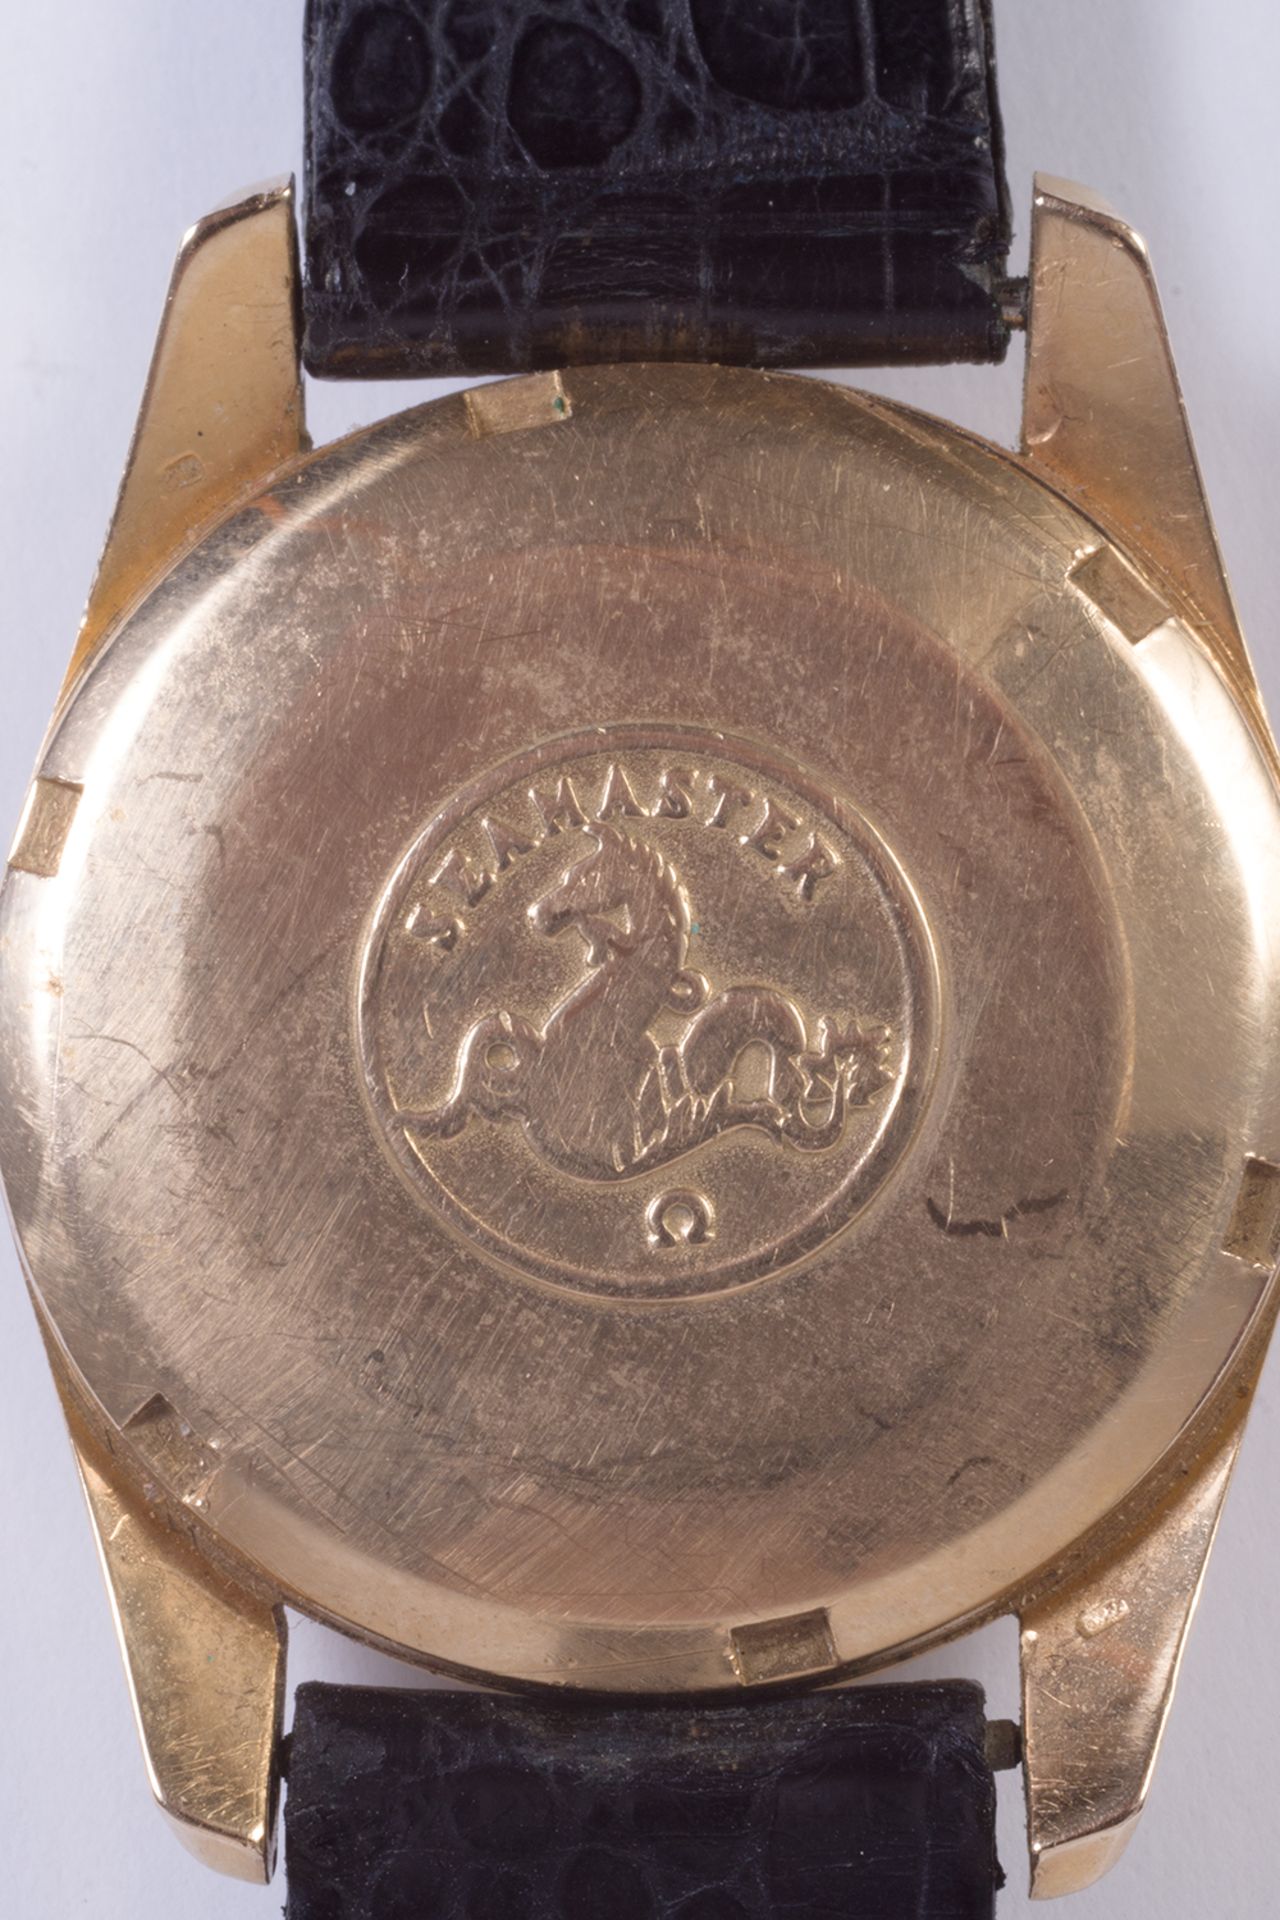 Reloj de pulsera Omega, modelo Seamaster, en oro y correa de piel. - Image 4 of 4